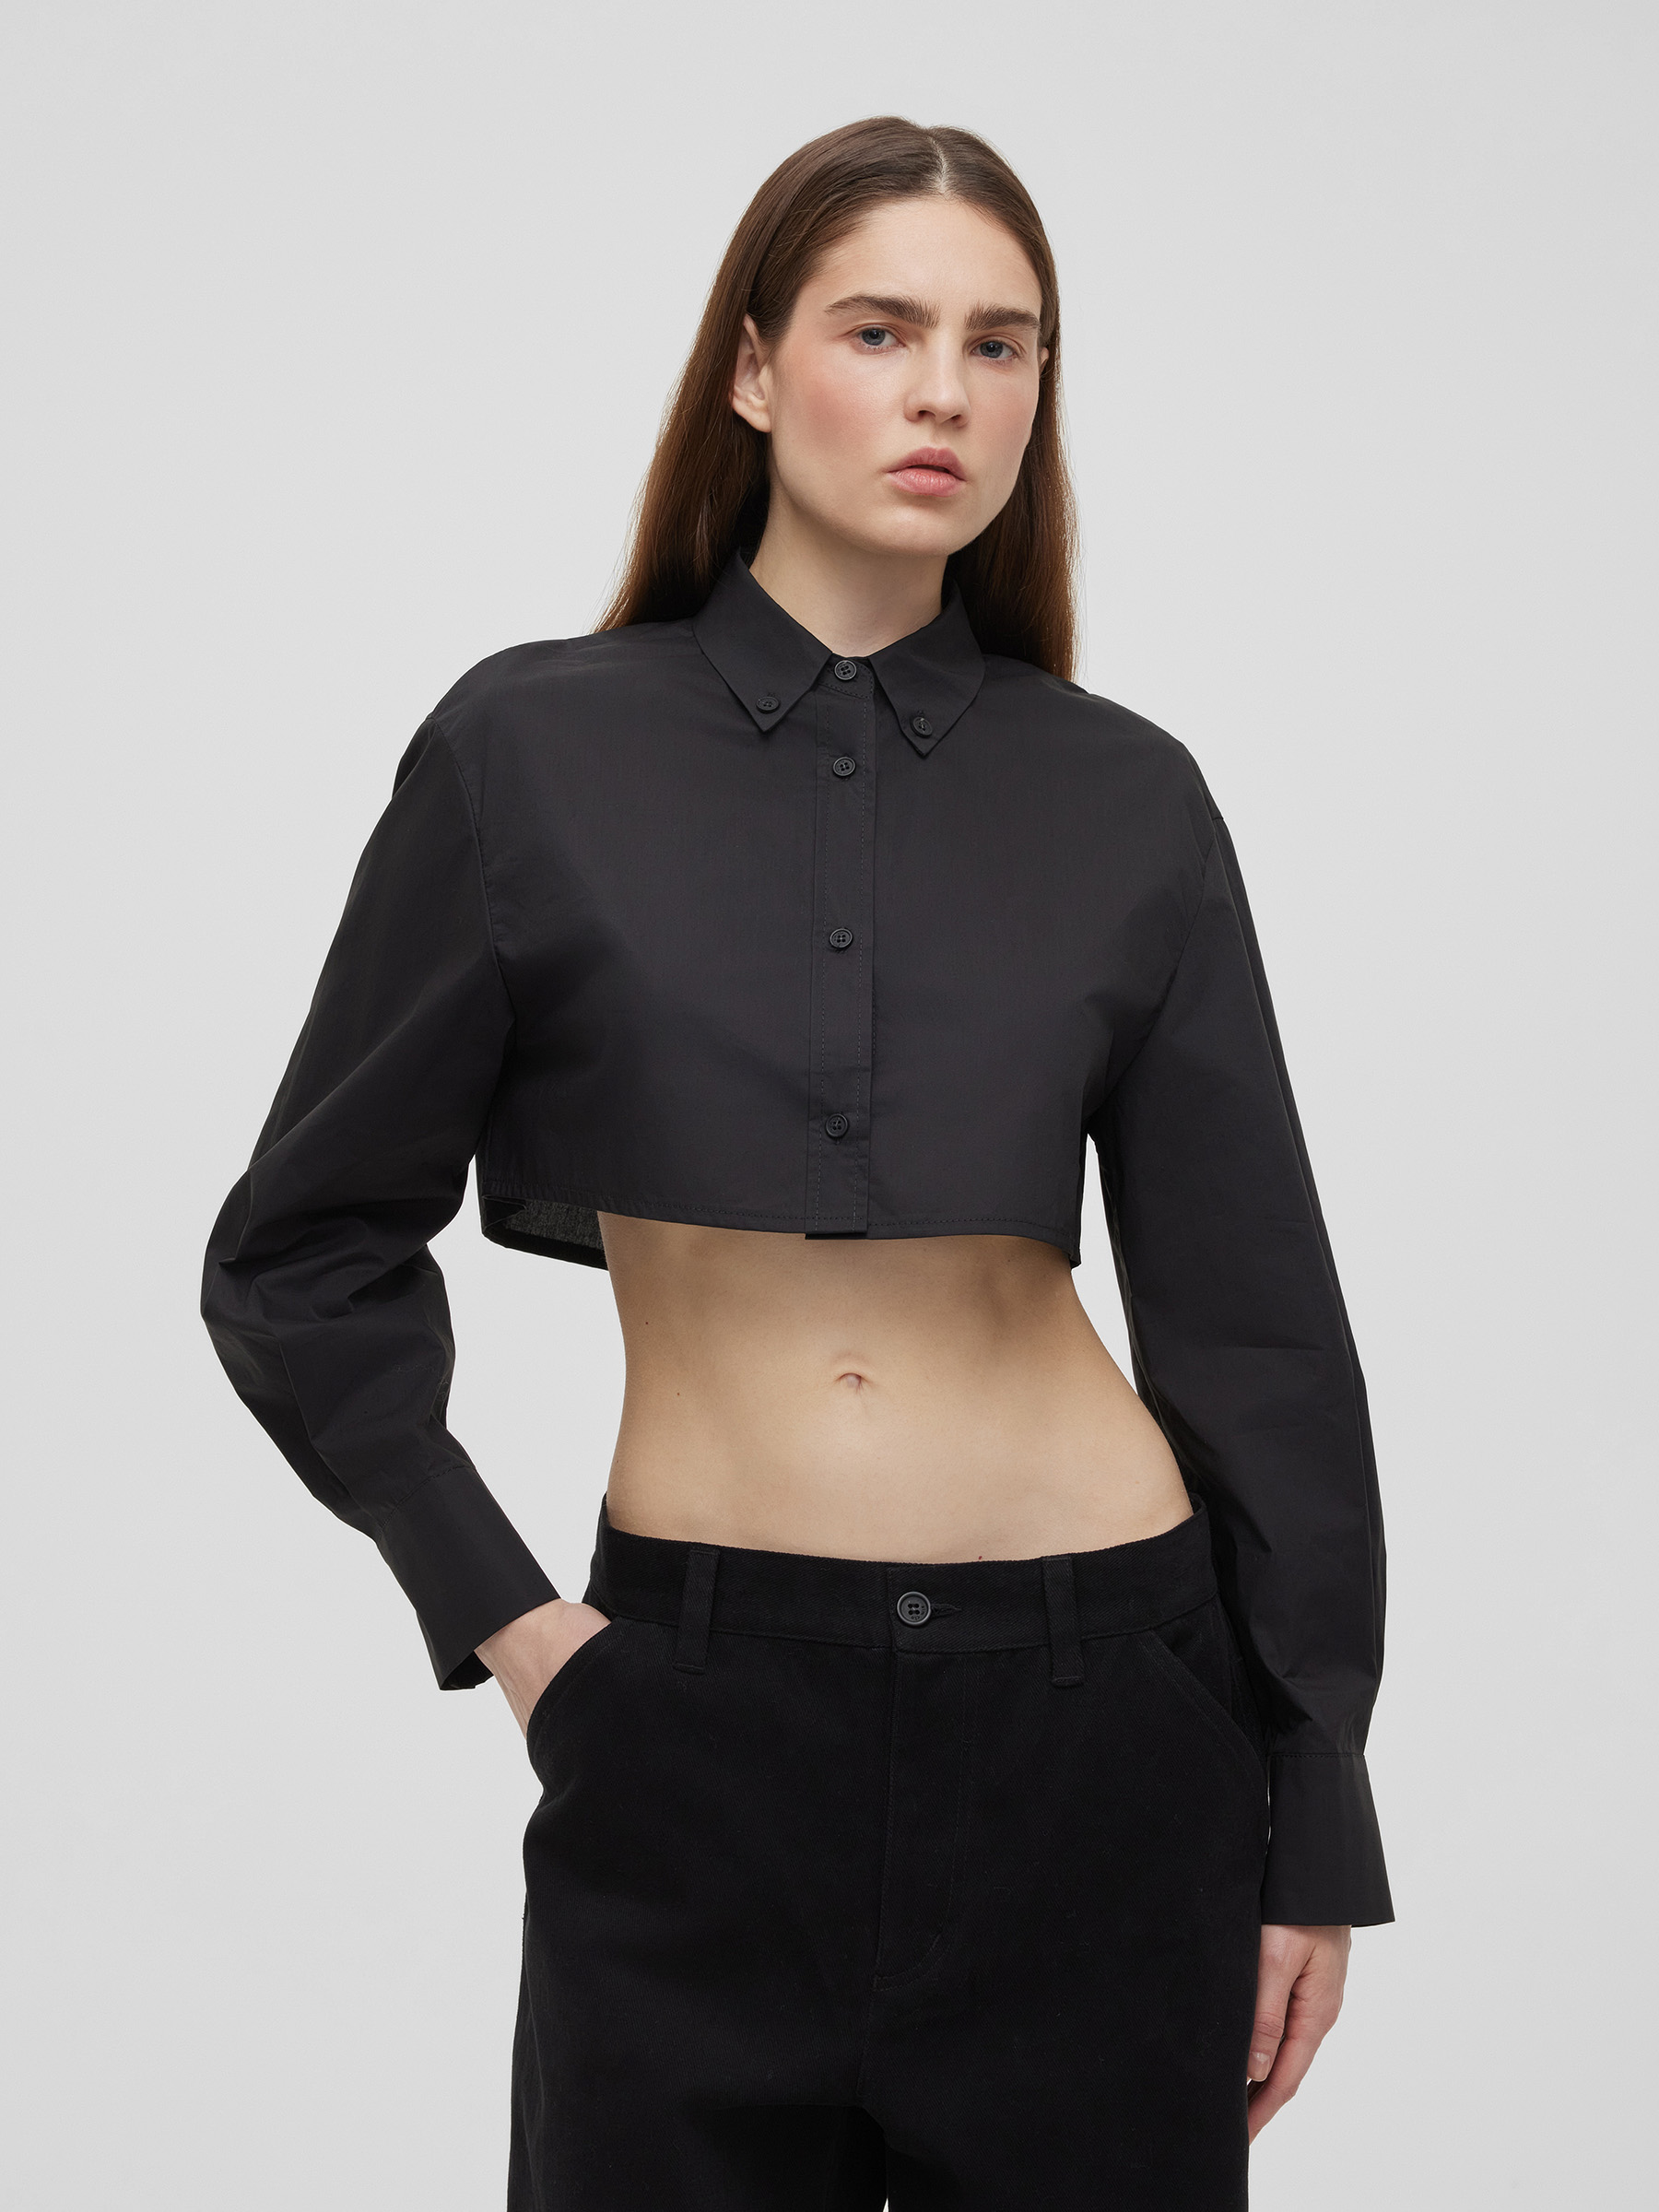 Рубашка женская короткая из хлопка, цвет – черный комплект рубашка шорты застежка пуговицы размер 36 черный